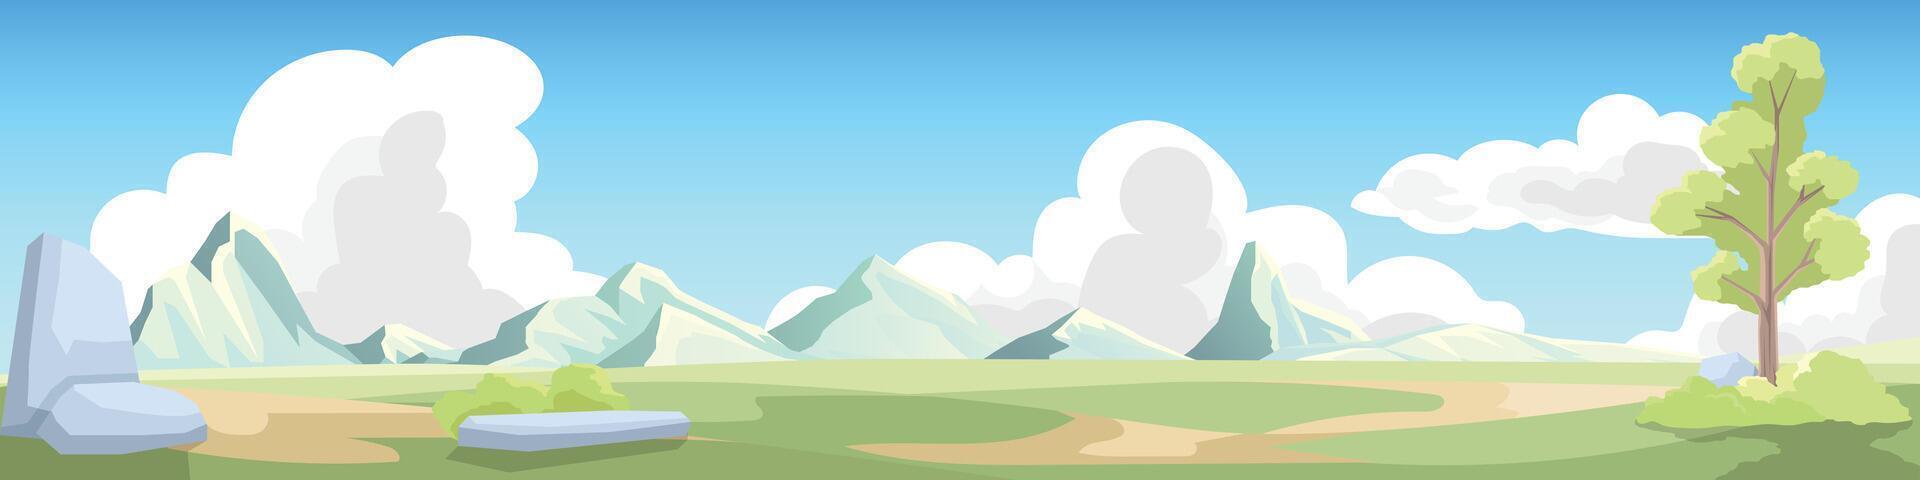 landskap se av vår bakgrund med bergen och moln under klar himmel. område är täckt i grön fält och har träd och rocks. vektor illustration i tecknad serie stil.